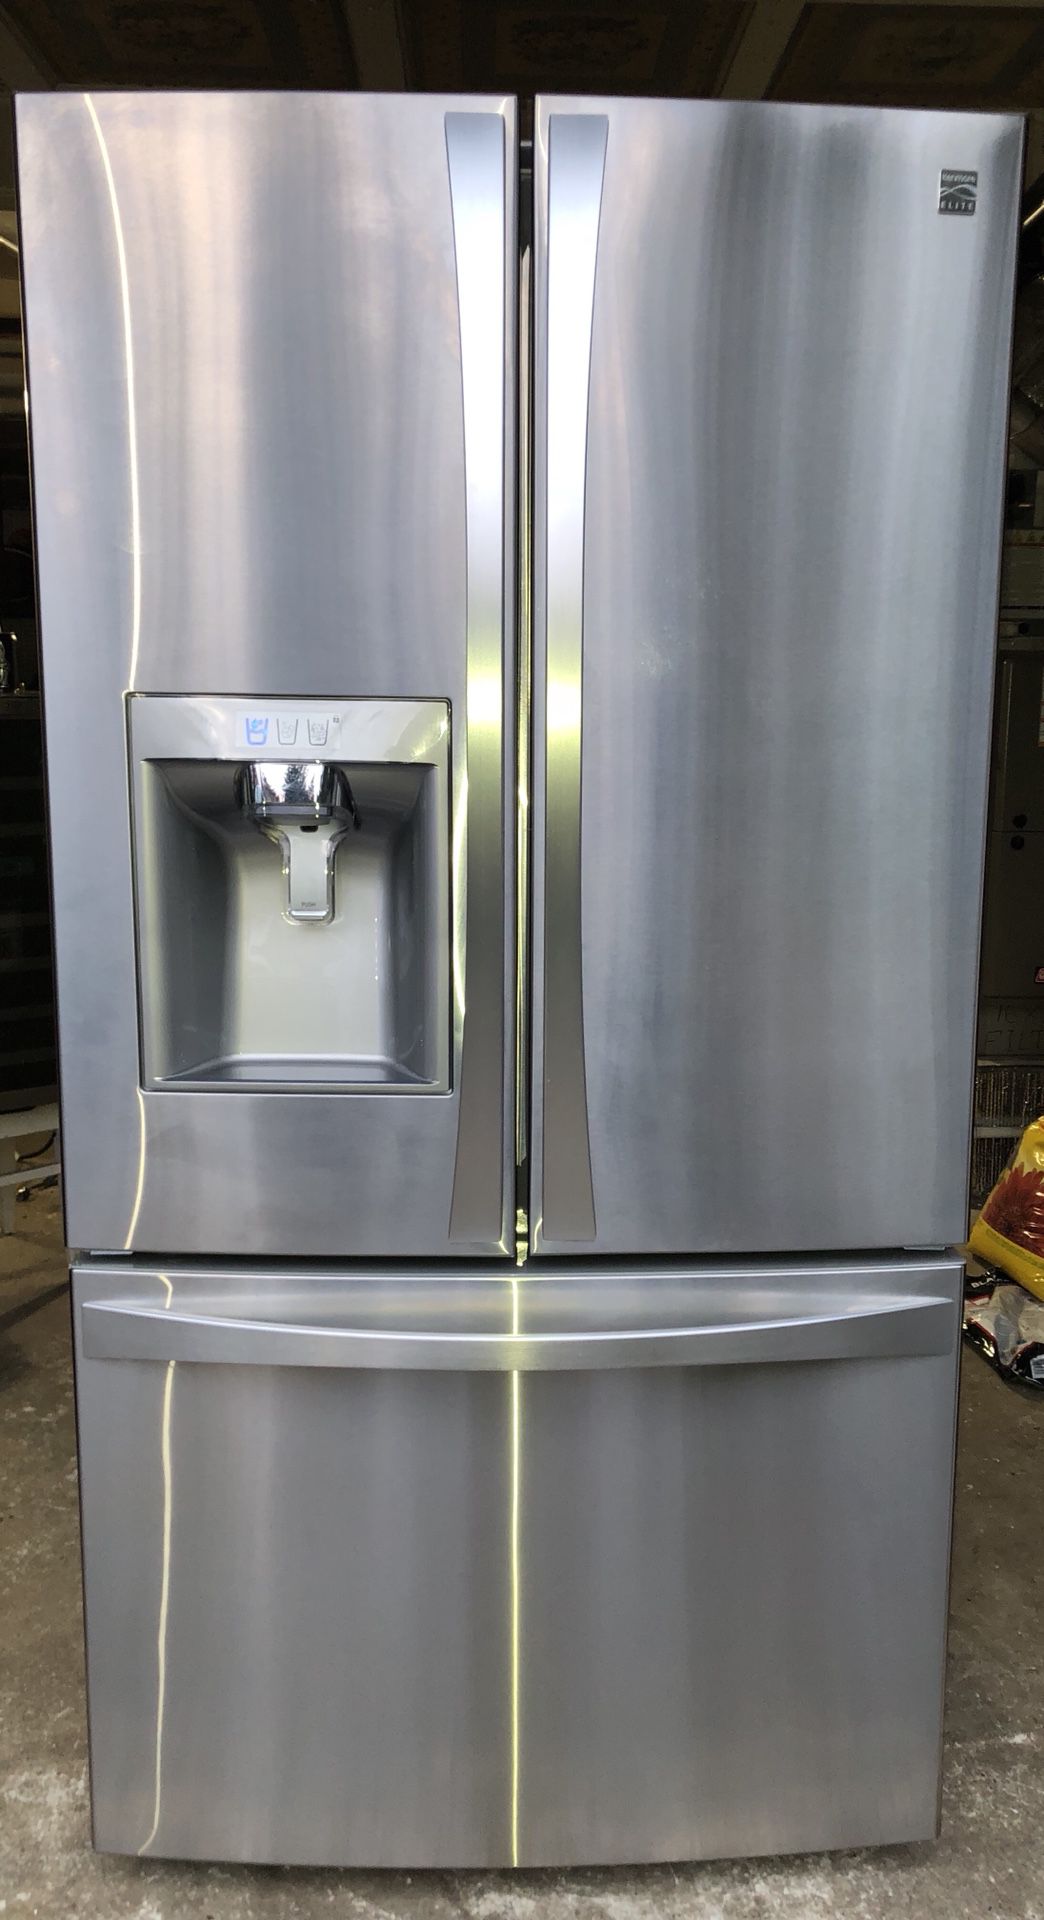 Kenmore elite refrigerator